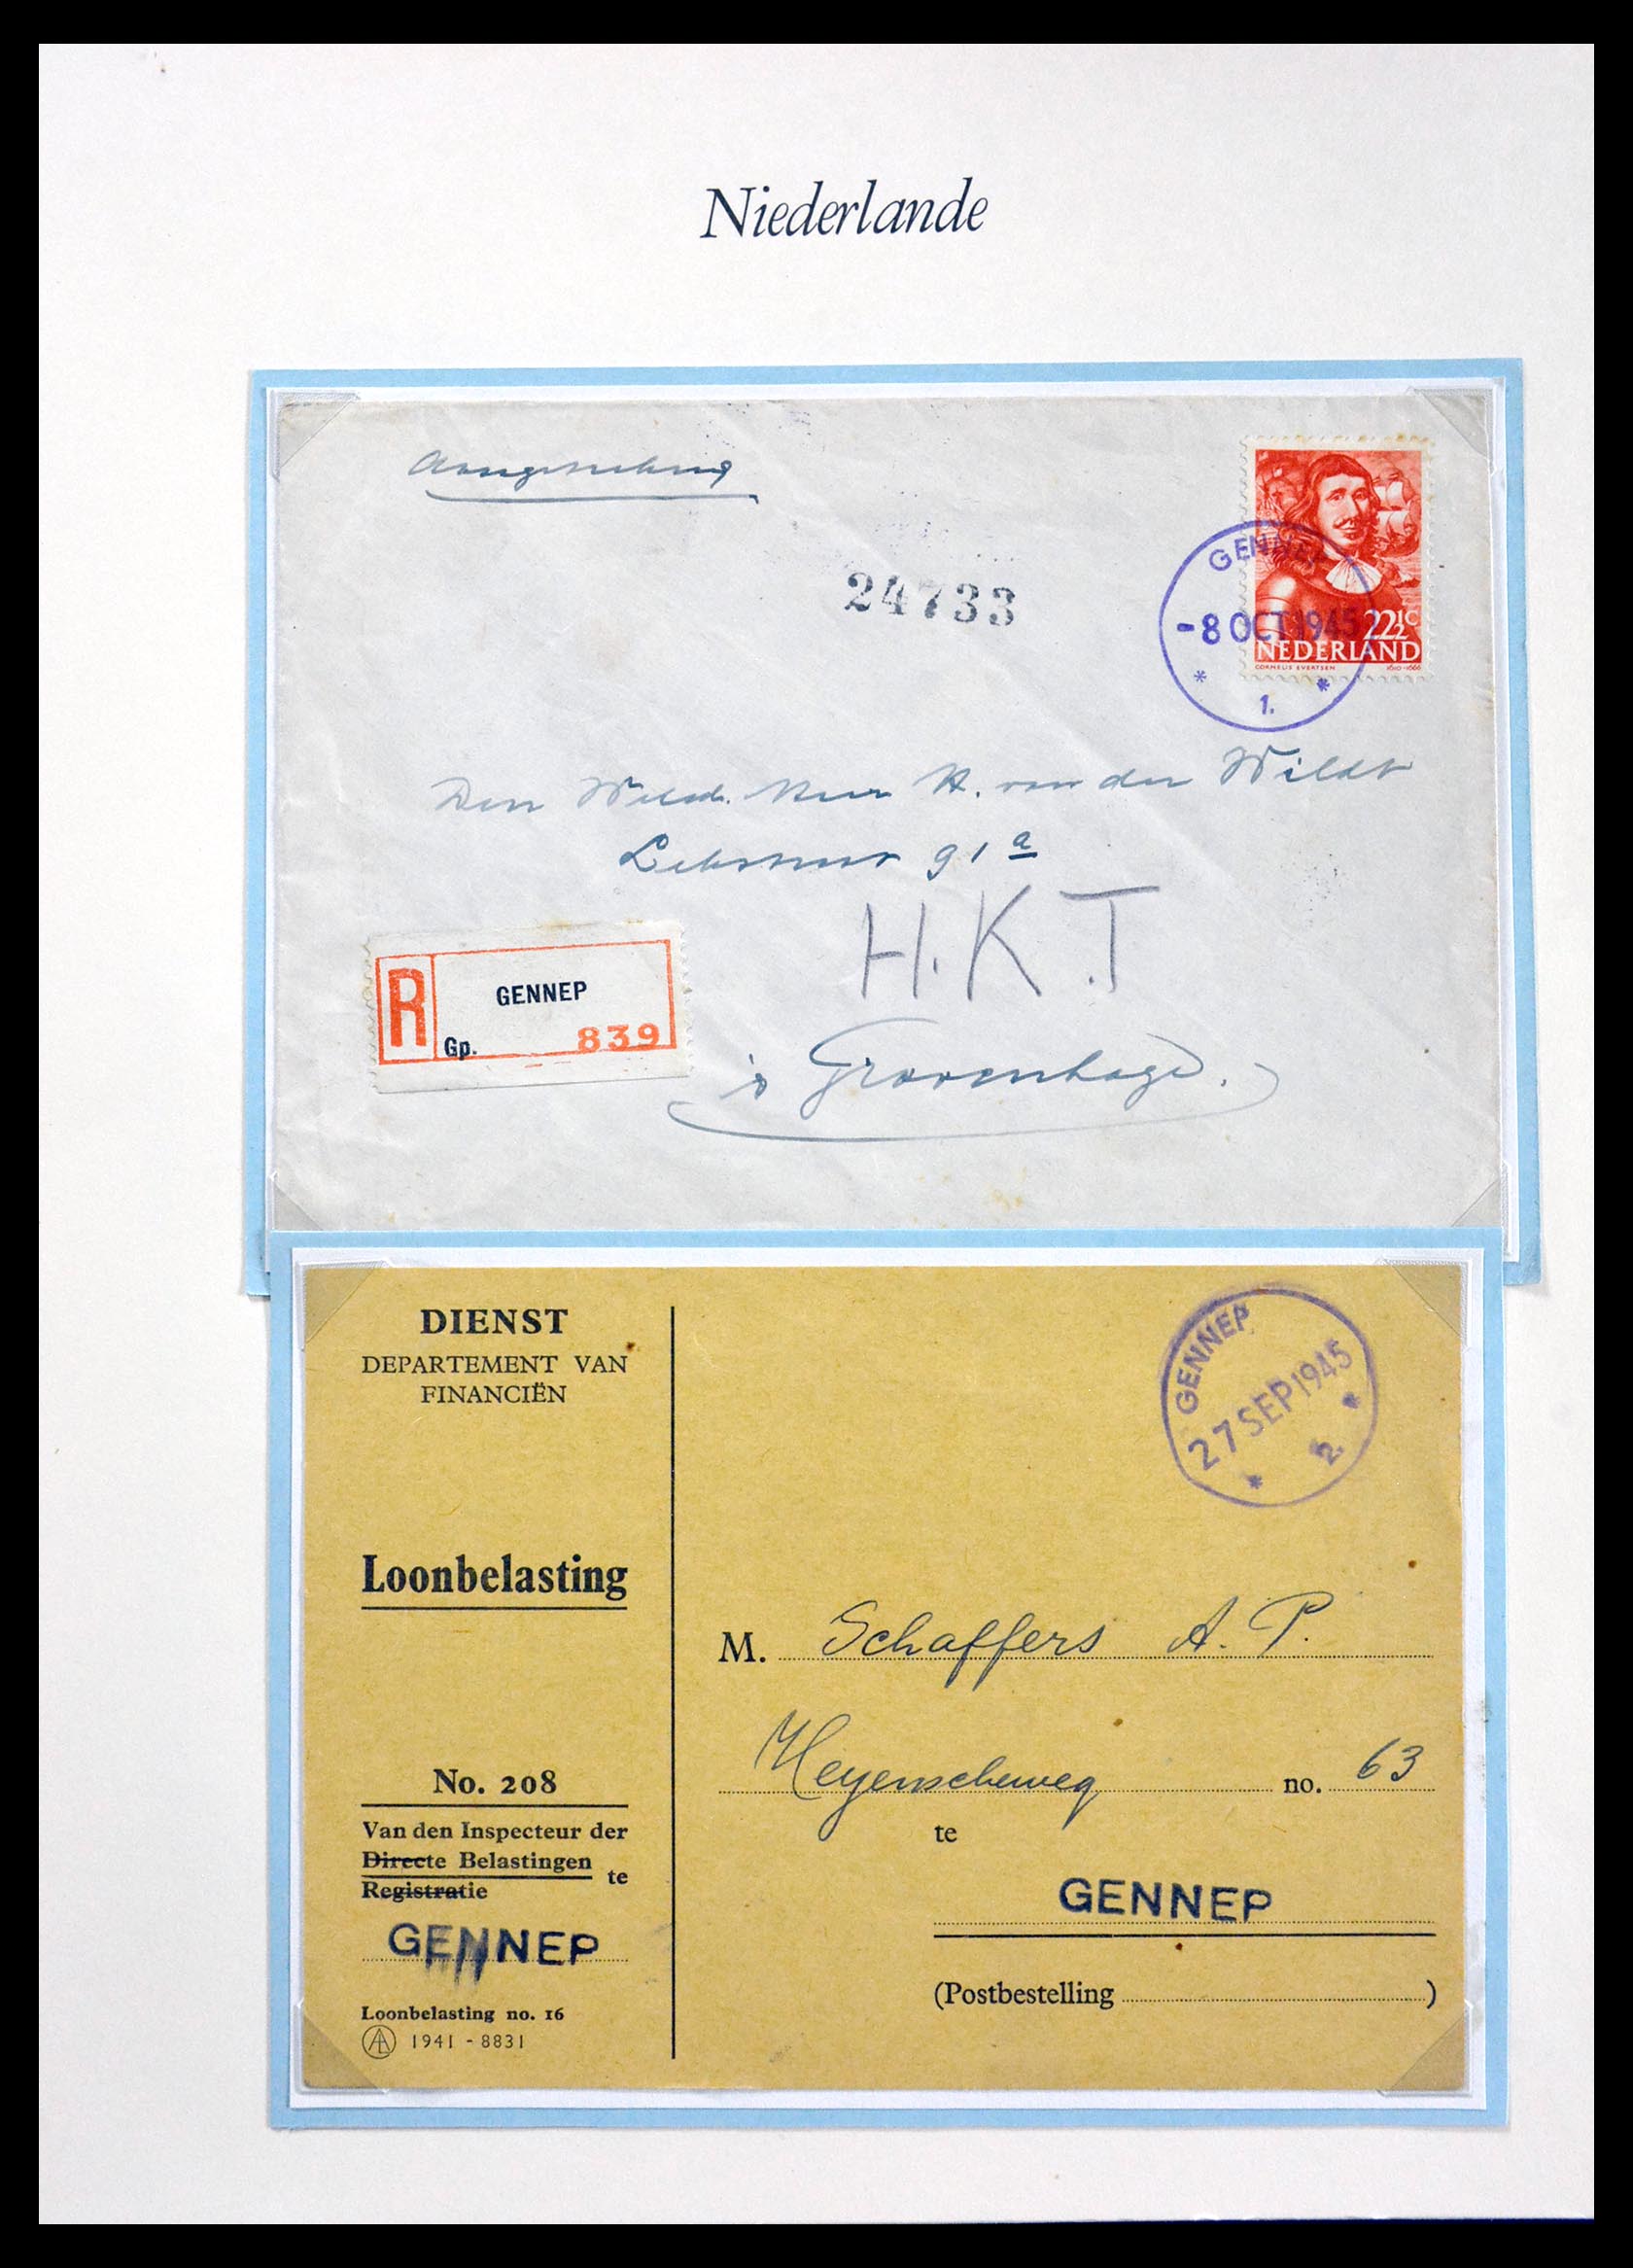 29824 012 - 29824 Netherlands cancels 1945-1946.